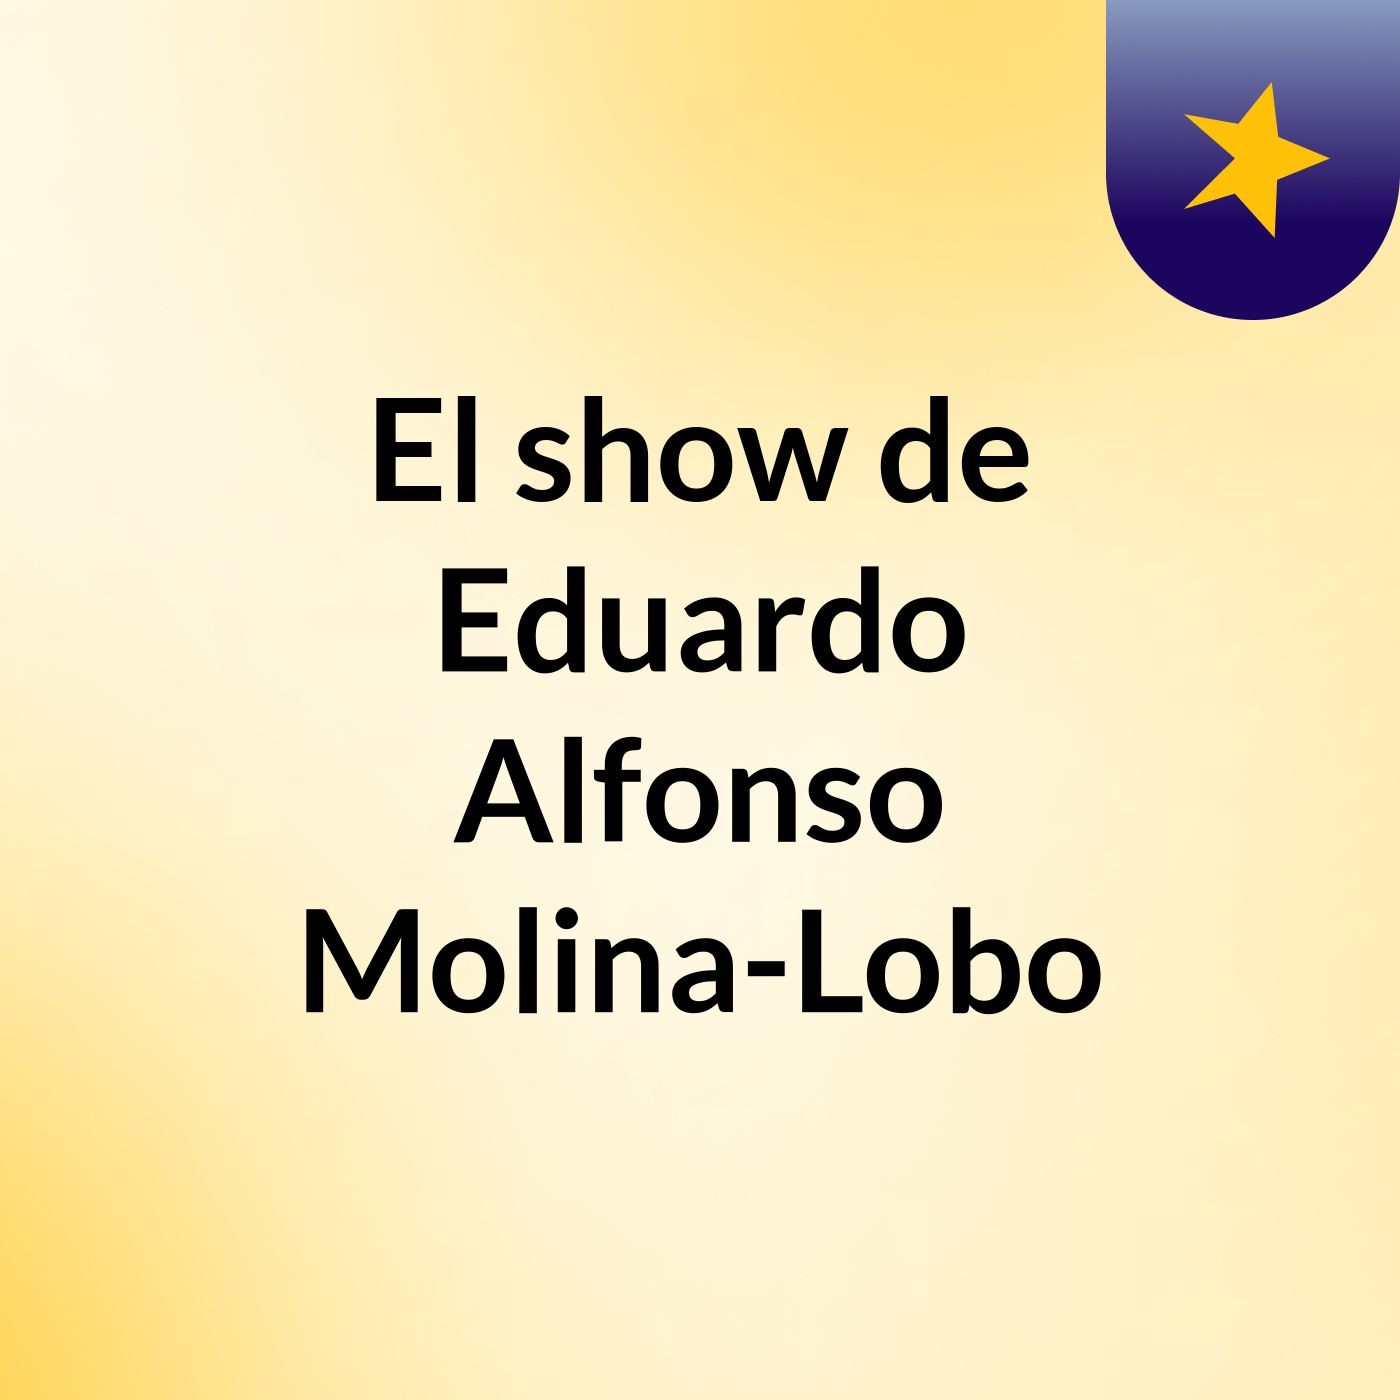 El show de Eduardo Alfonso Molina-Lobo